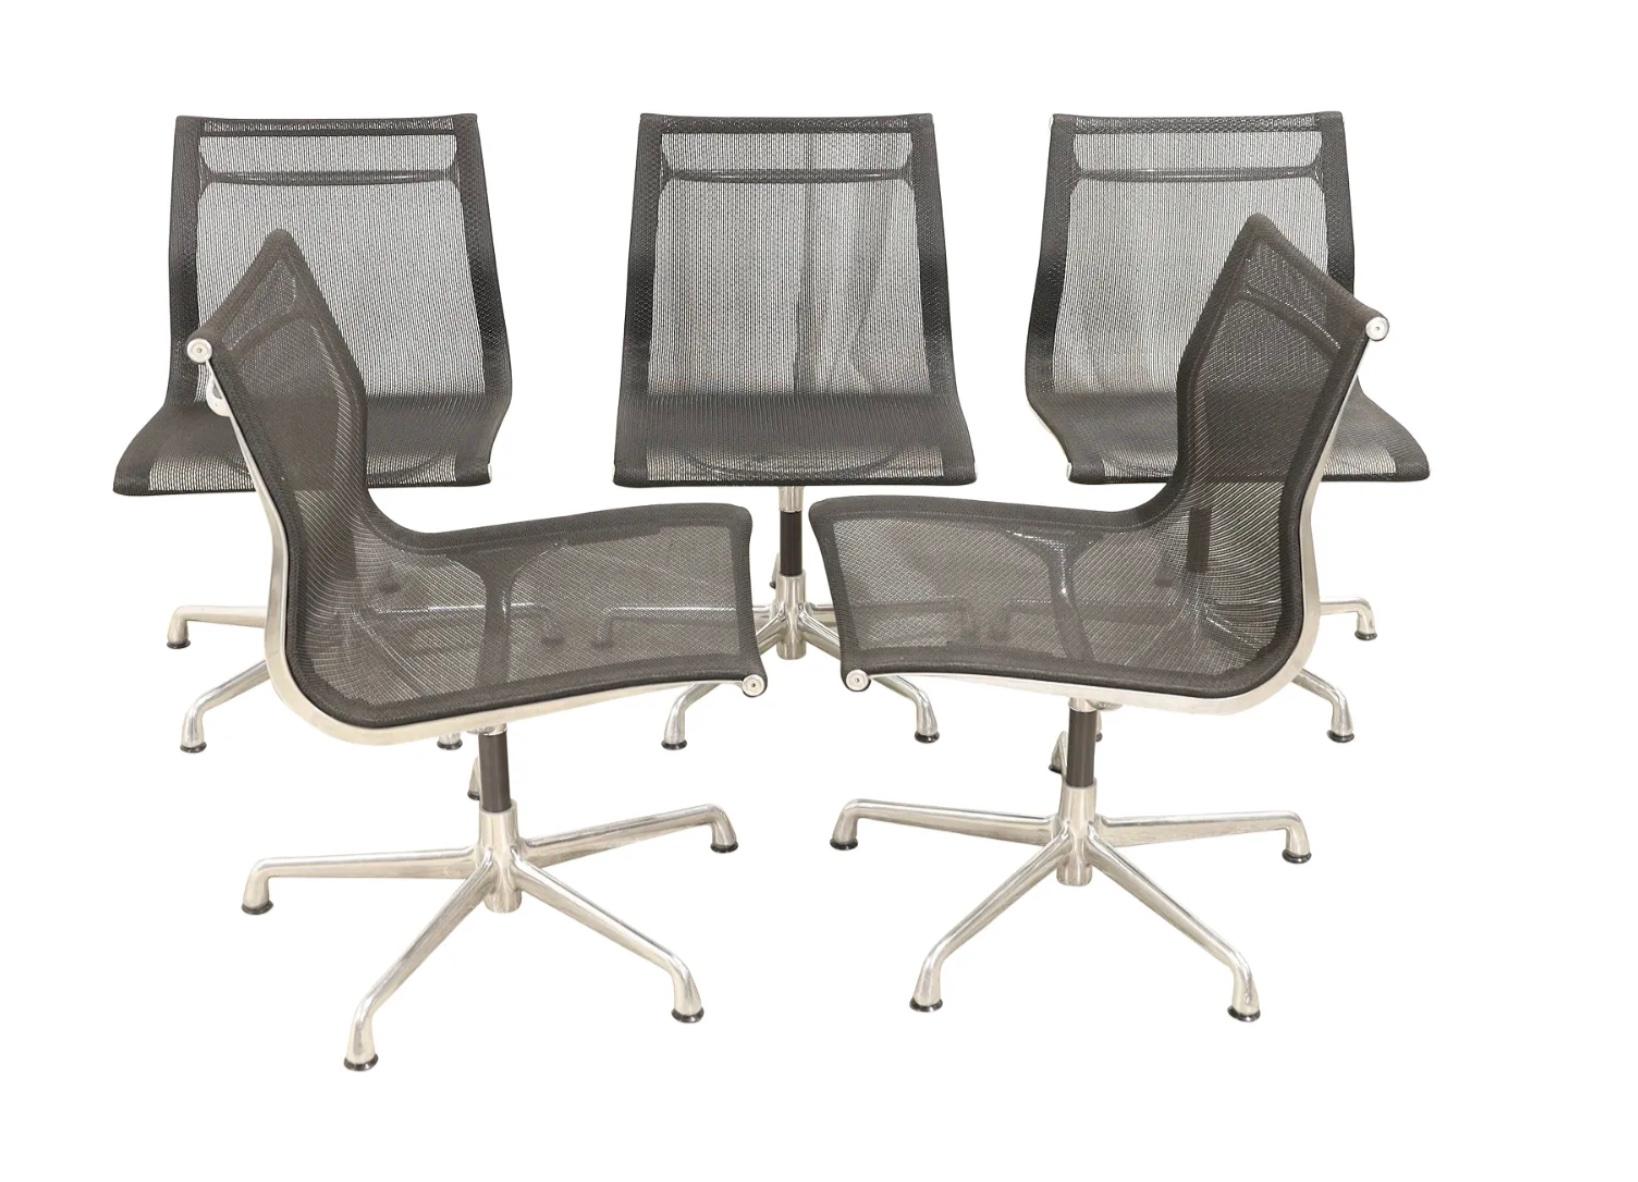 Moderner Herman Miller Eames Aluminum Group Side Office Chair in Black Mesh. Diese Stühle haben keine Armlehnen / keine Rollen / keine Höhenverstellung, aber diese Stühle sind drehbar. Etikett unter dem Rahmen. Wie neu - Vorbesitz. Datiert 2008. Der